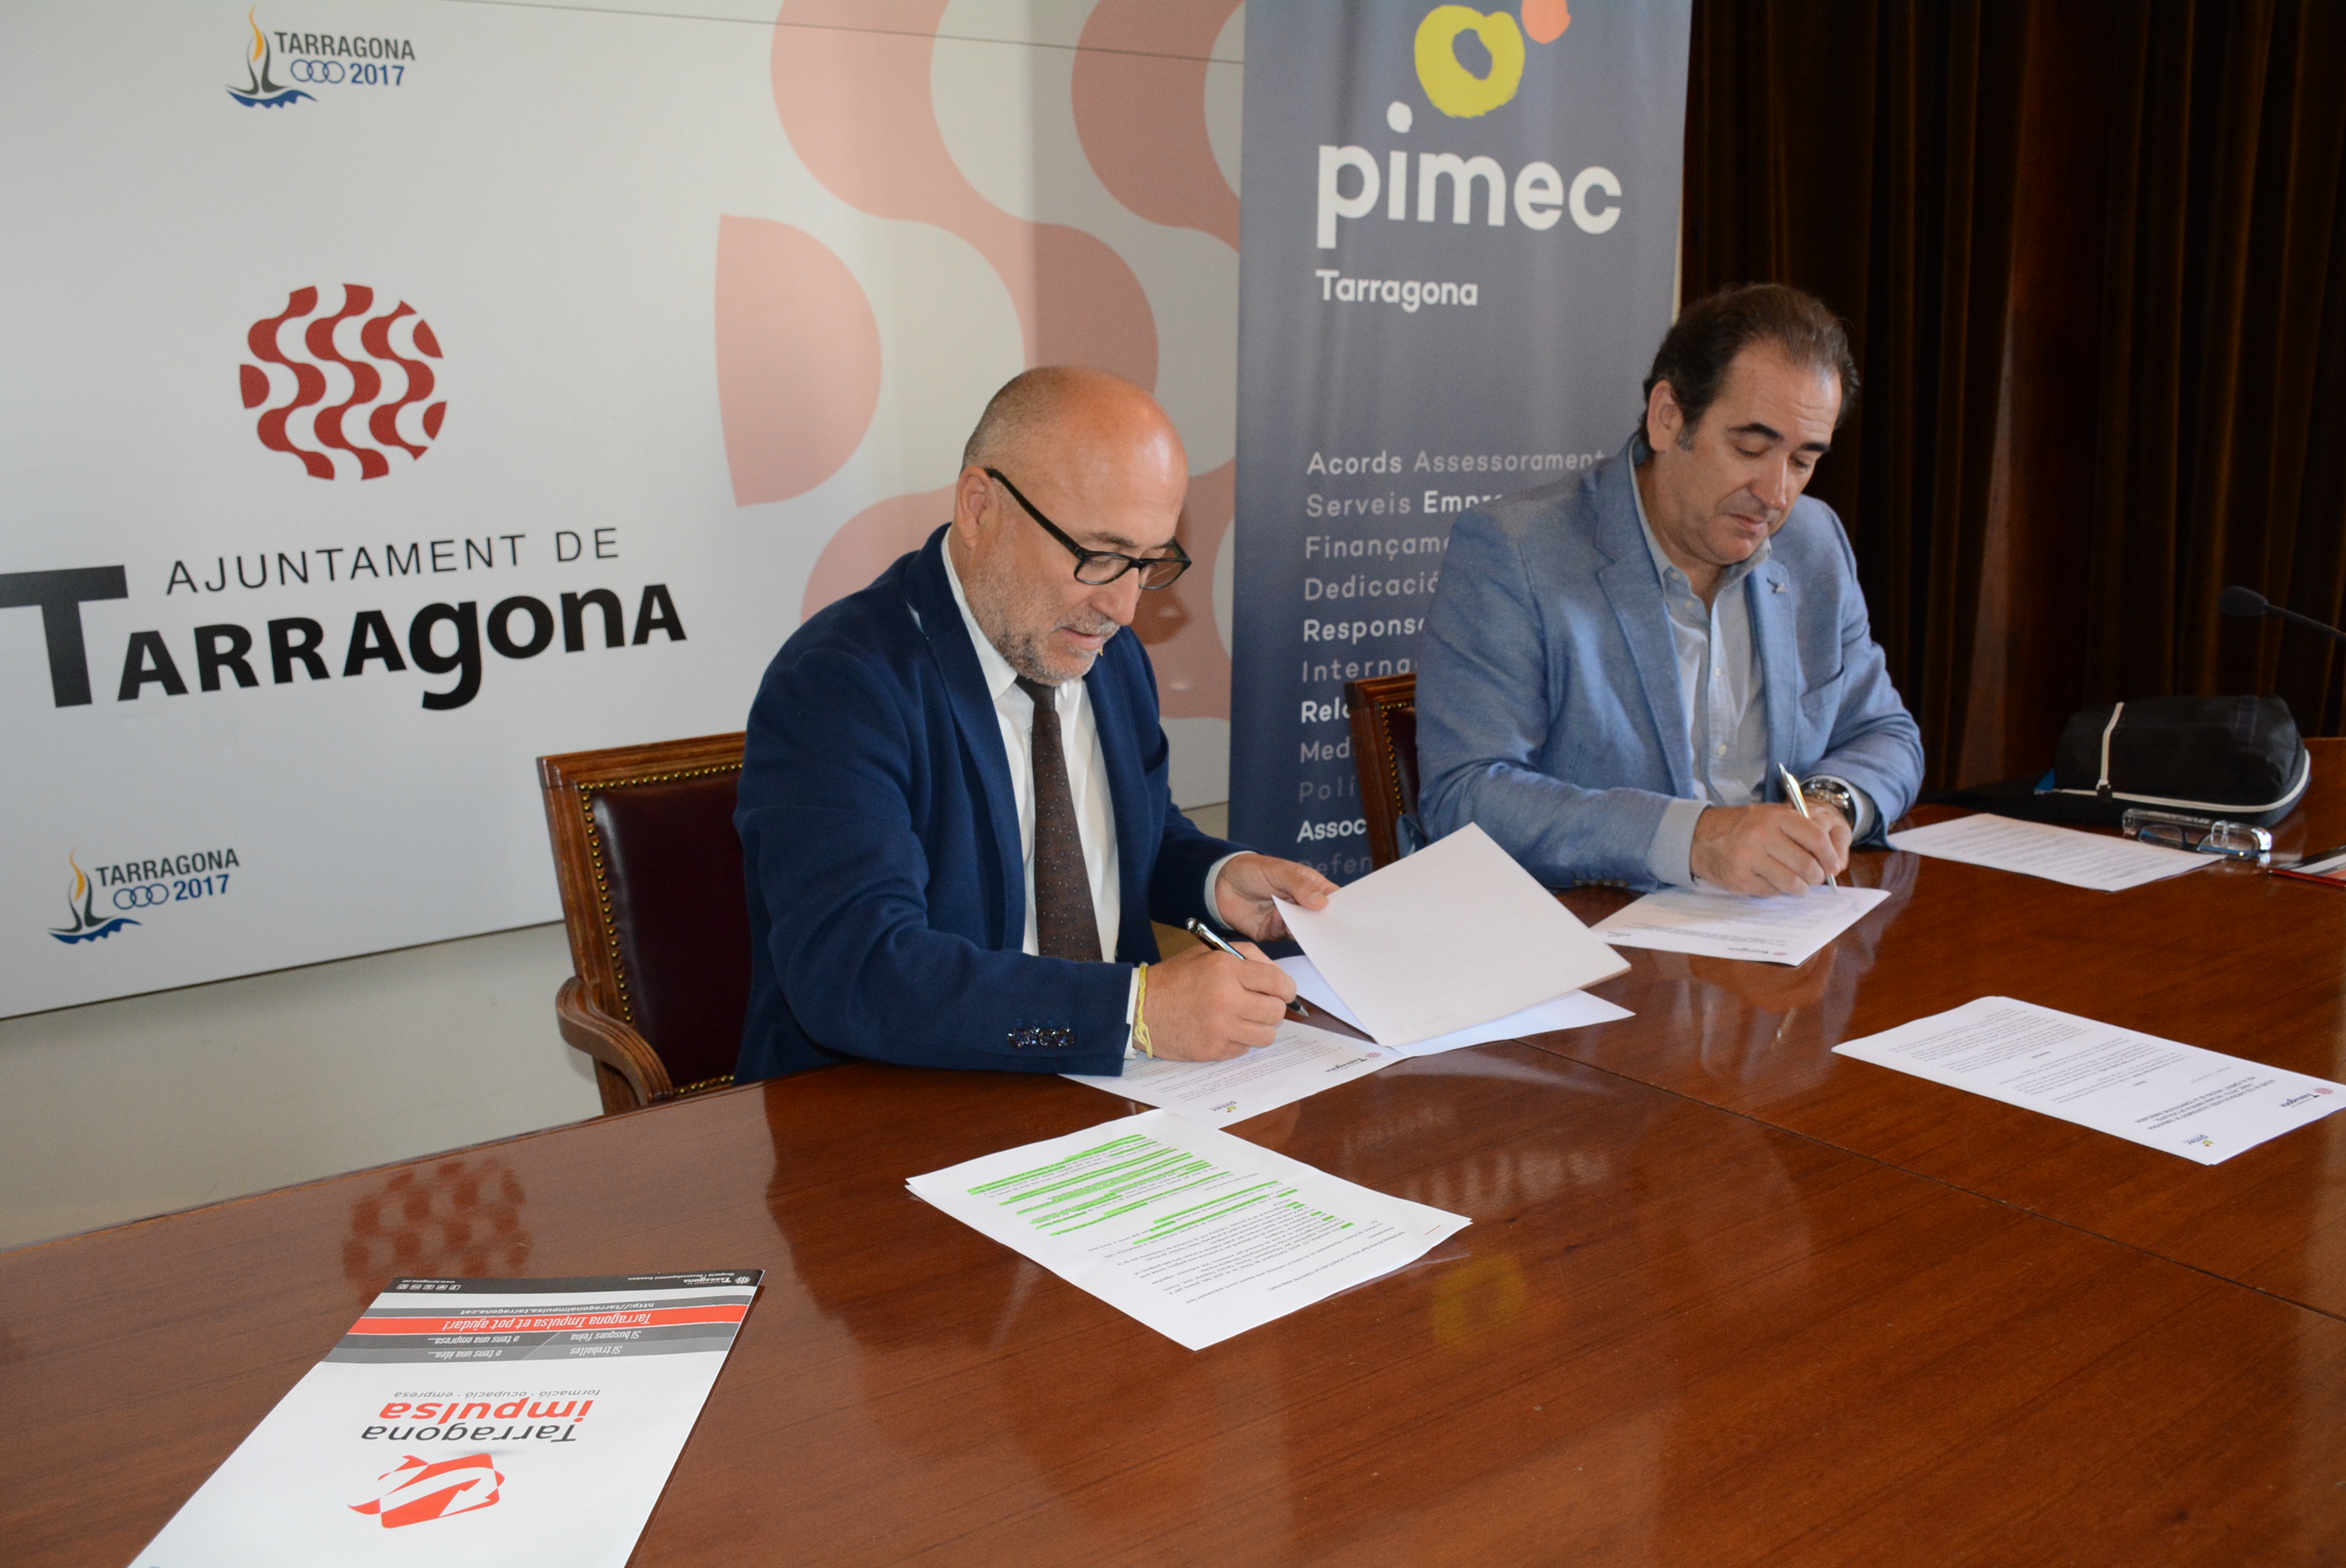 PIMEC Tarragona i l'Ajuntament de Tarragona impulsen accions per a la millora de la competitivitat e